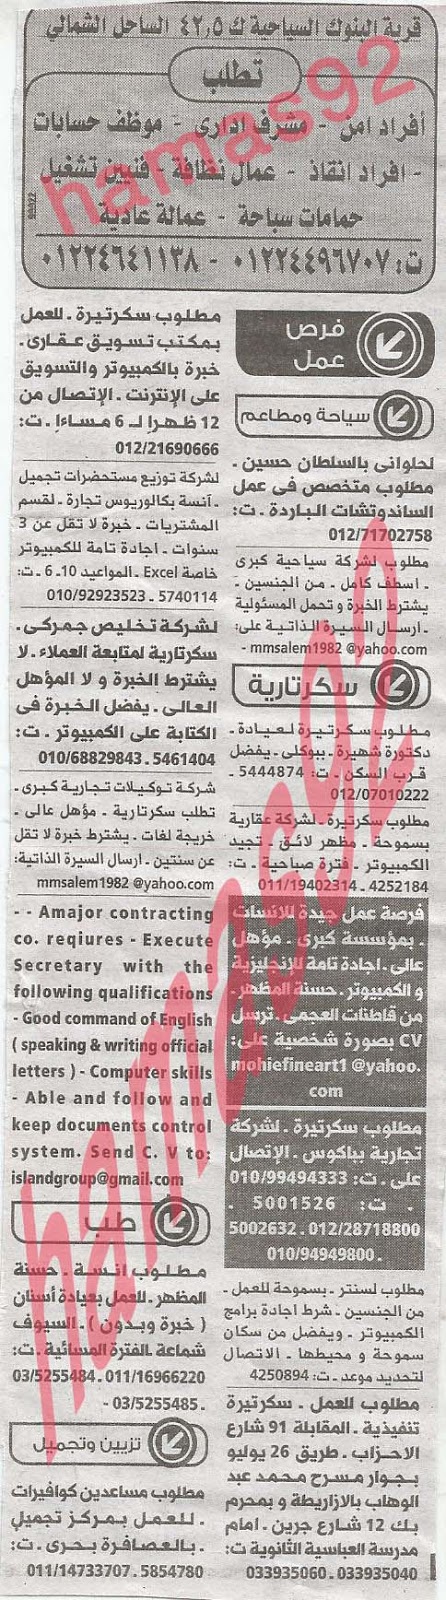 وظائف خالية فى جريدة الوسيط الاسكندرية الاحد 16-06-2013 %D9%88+%D8%B3+%D8%B3+2